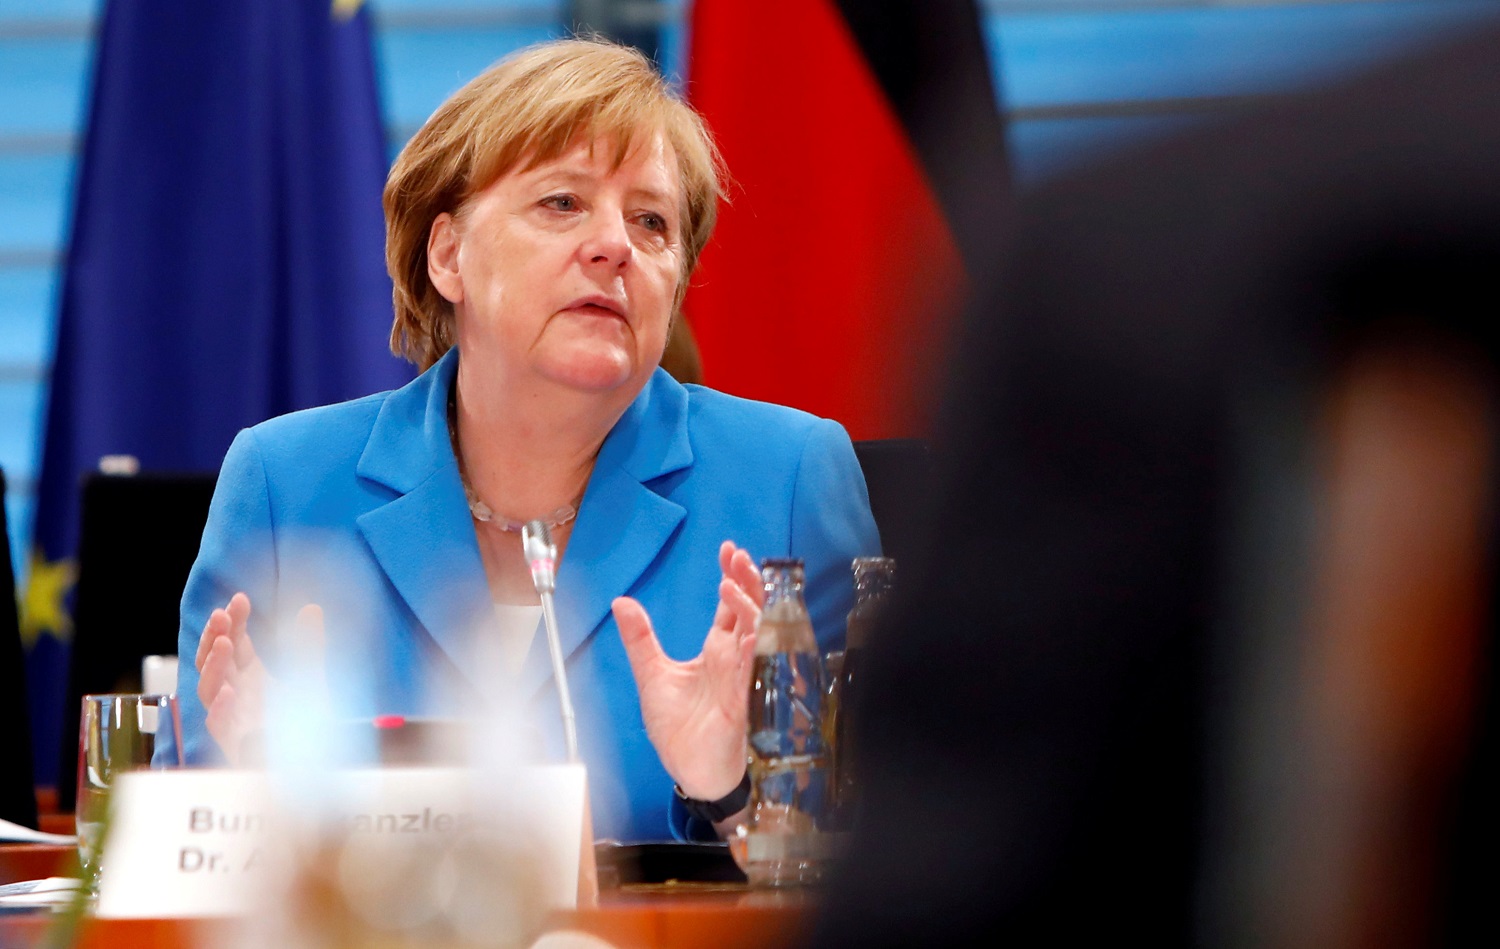 “¡Qué tristeza!” exclama portavoz de Merkel ante eliminación de Alemania en Mundial